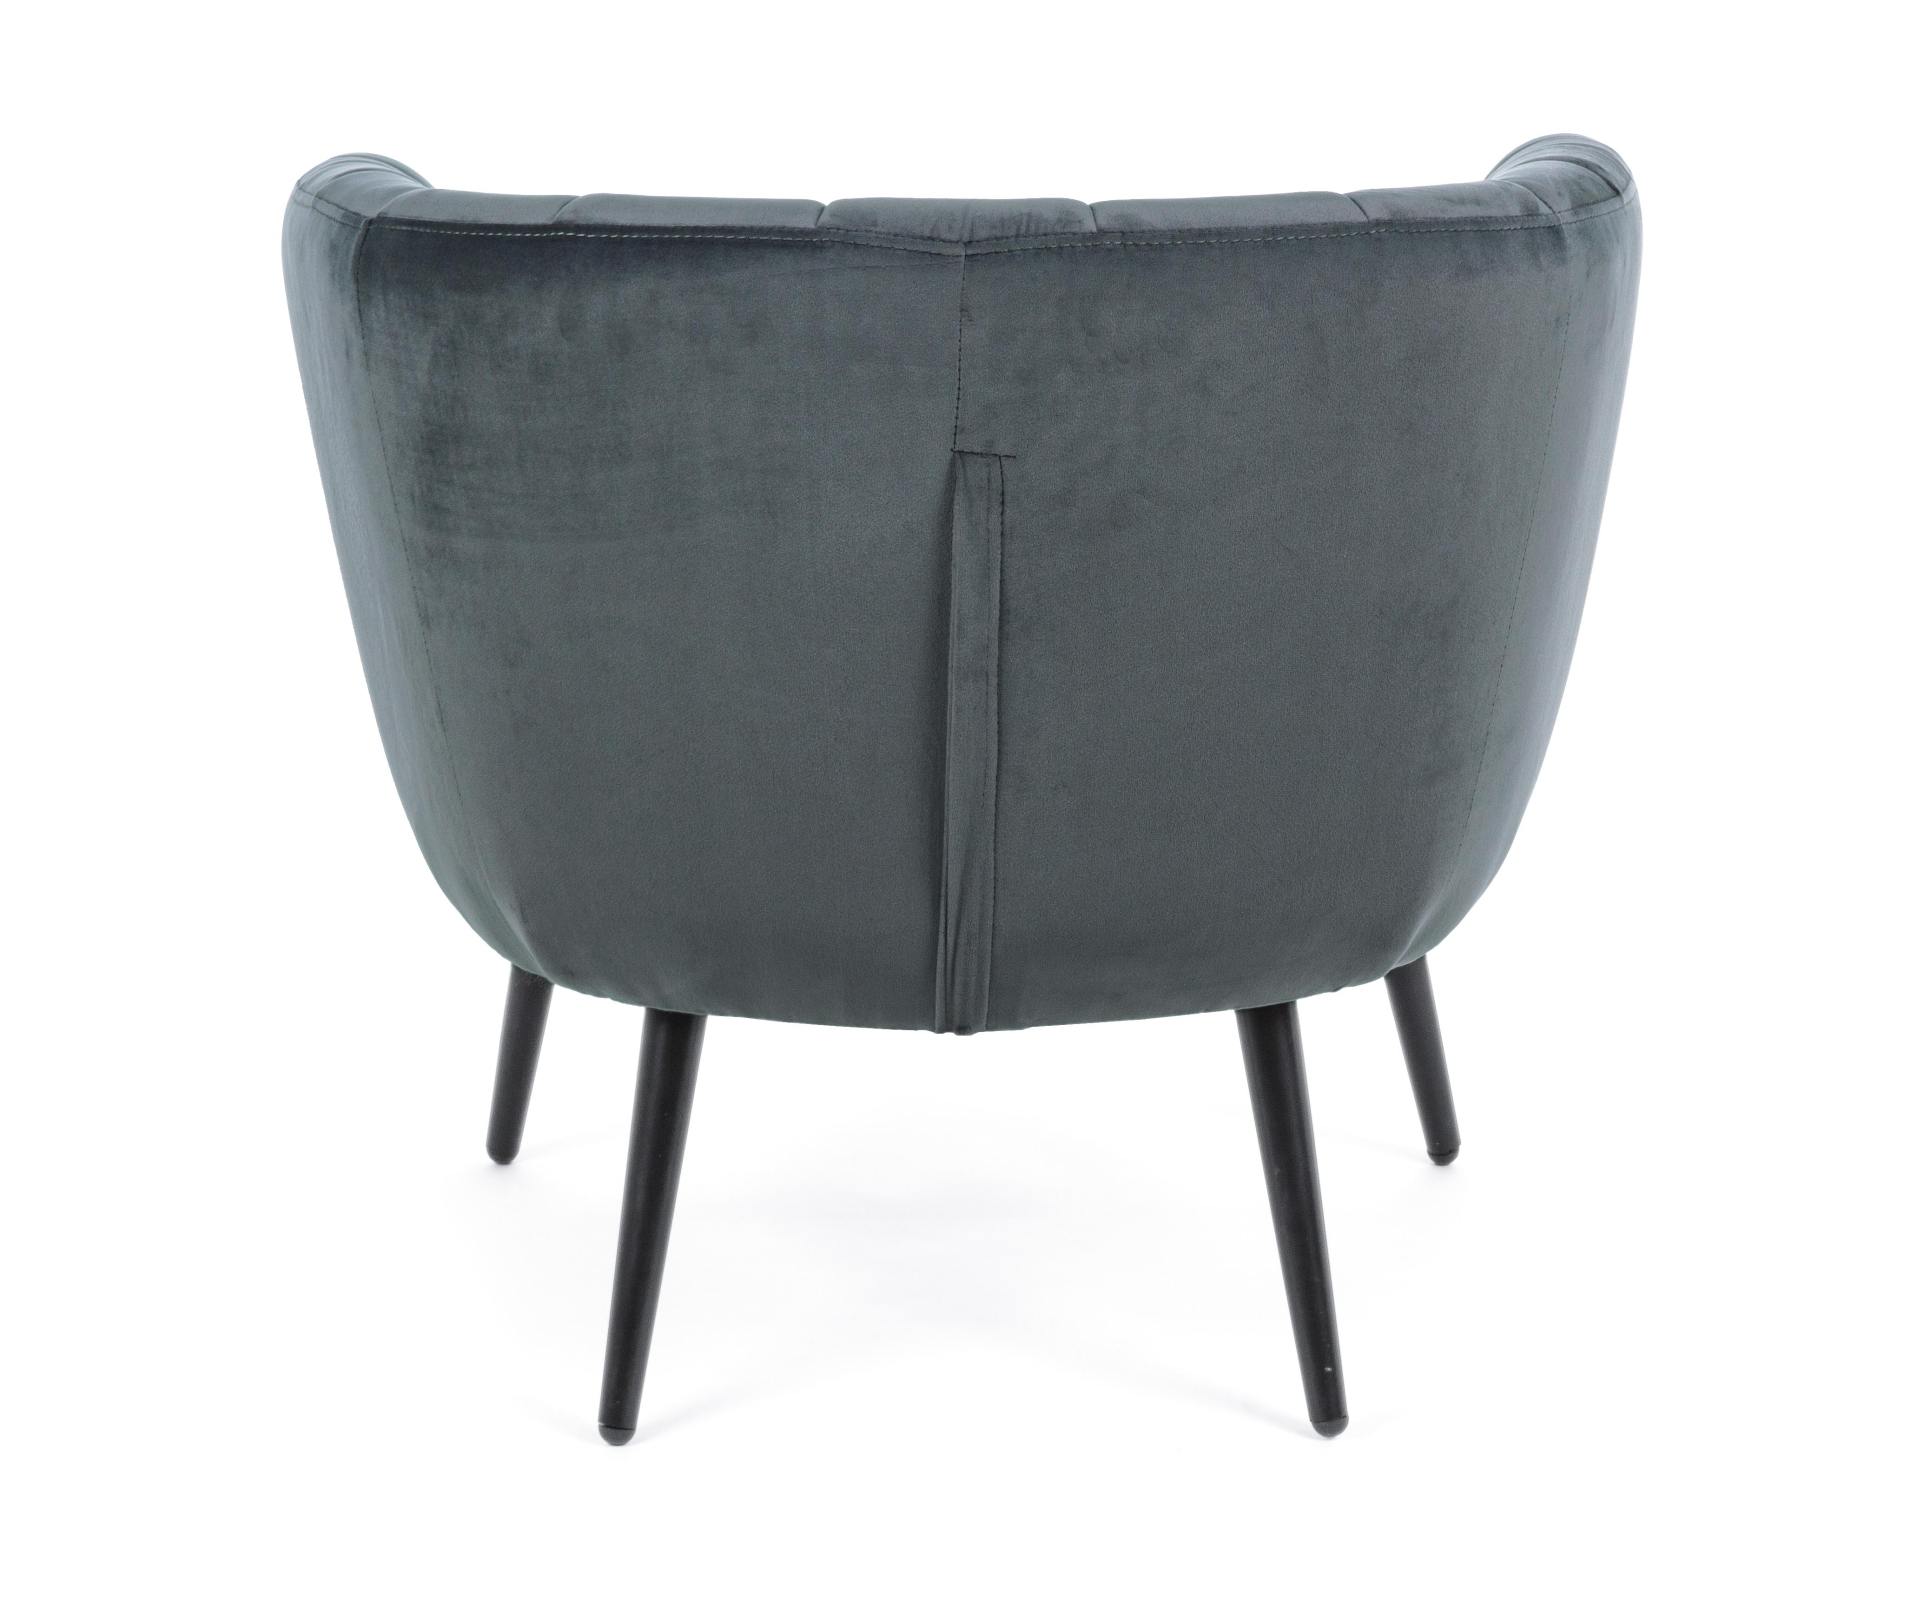 Der Sessel Avril überzeugt mit seinem modernen Design. Gefertigt wurde er aus Stoff in Samt-Optik, welcher einen grauen Farbton besitzt. Das Gestell ist aus Metall und hat eine schwarze Farbe. Der Sessel besitzt eine Sitzhöhe von 43 cm. Die Breite beträgt